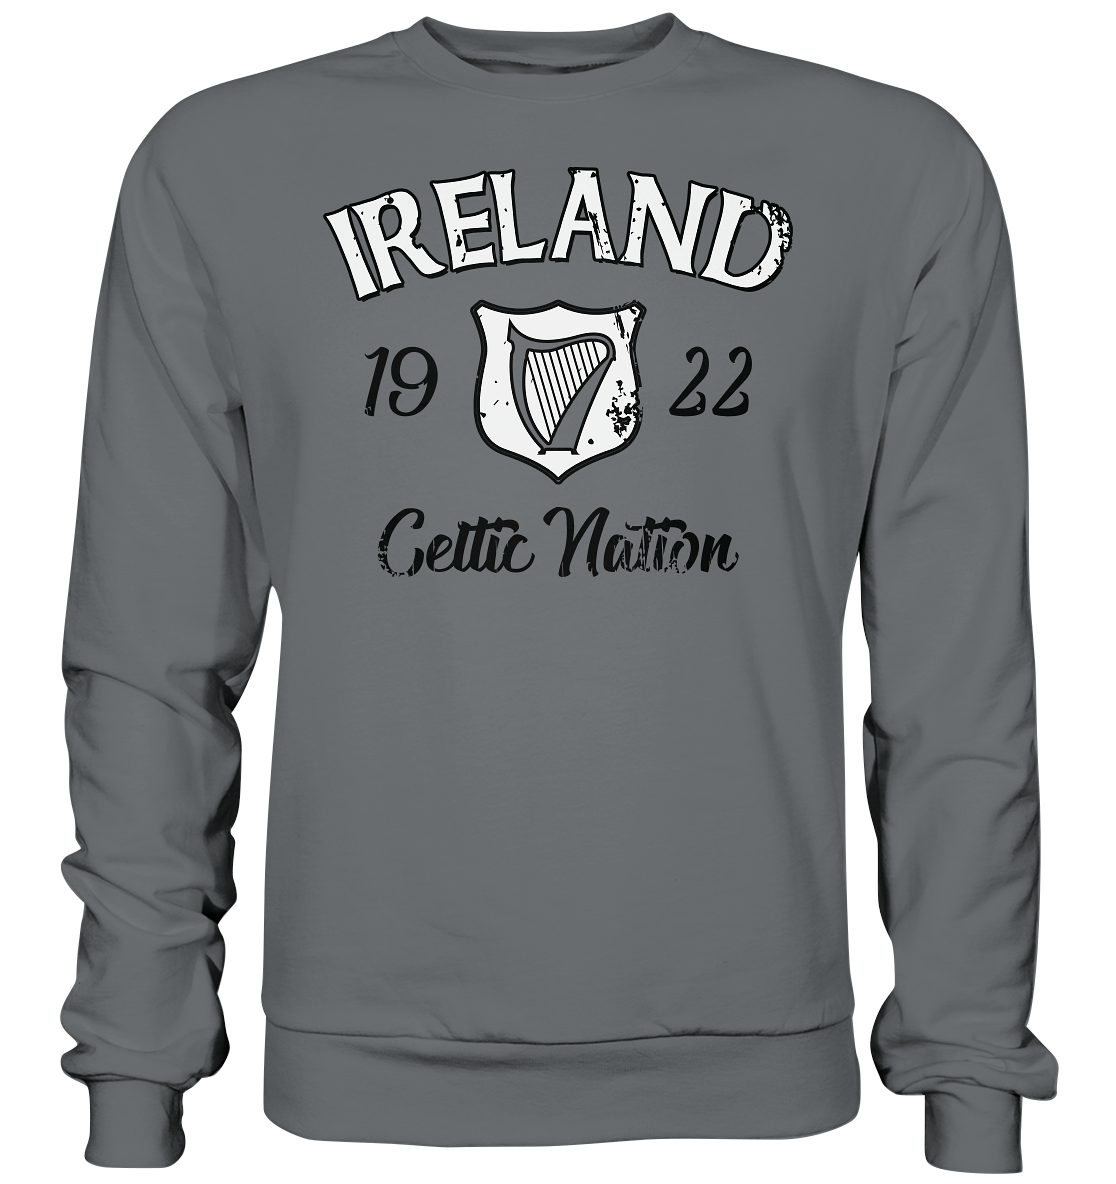 Ireland "Celtic Nation" - Basic Sweatshirt